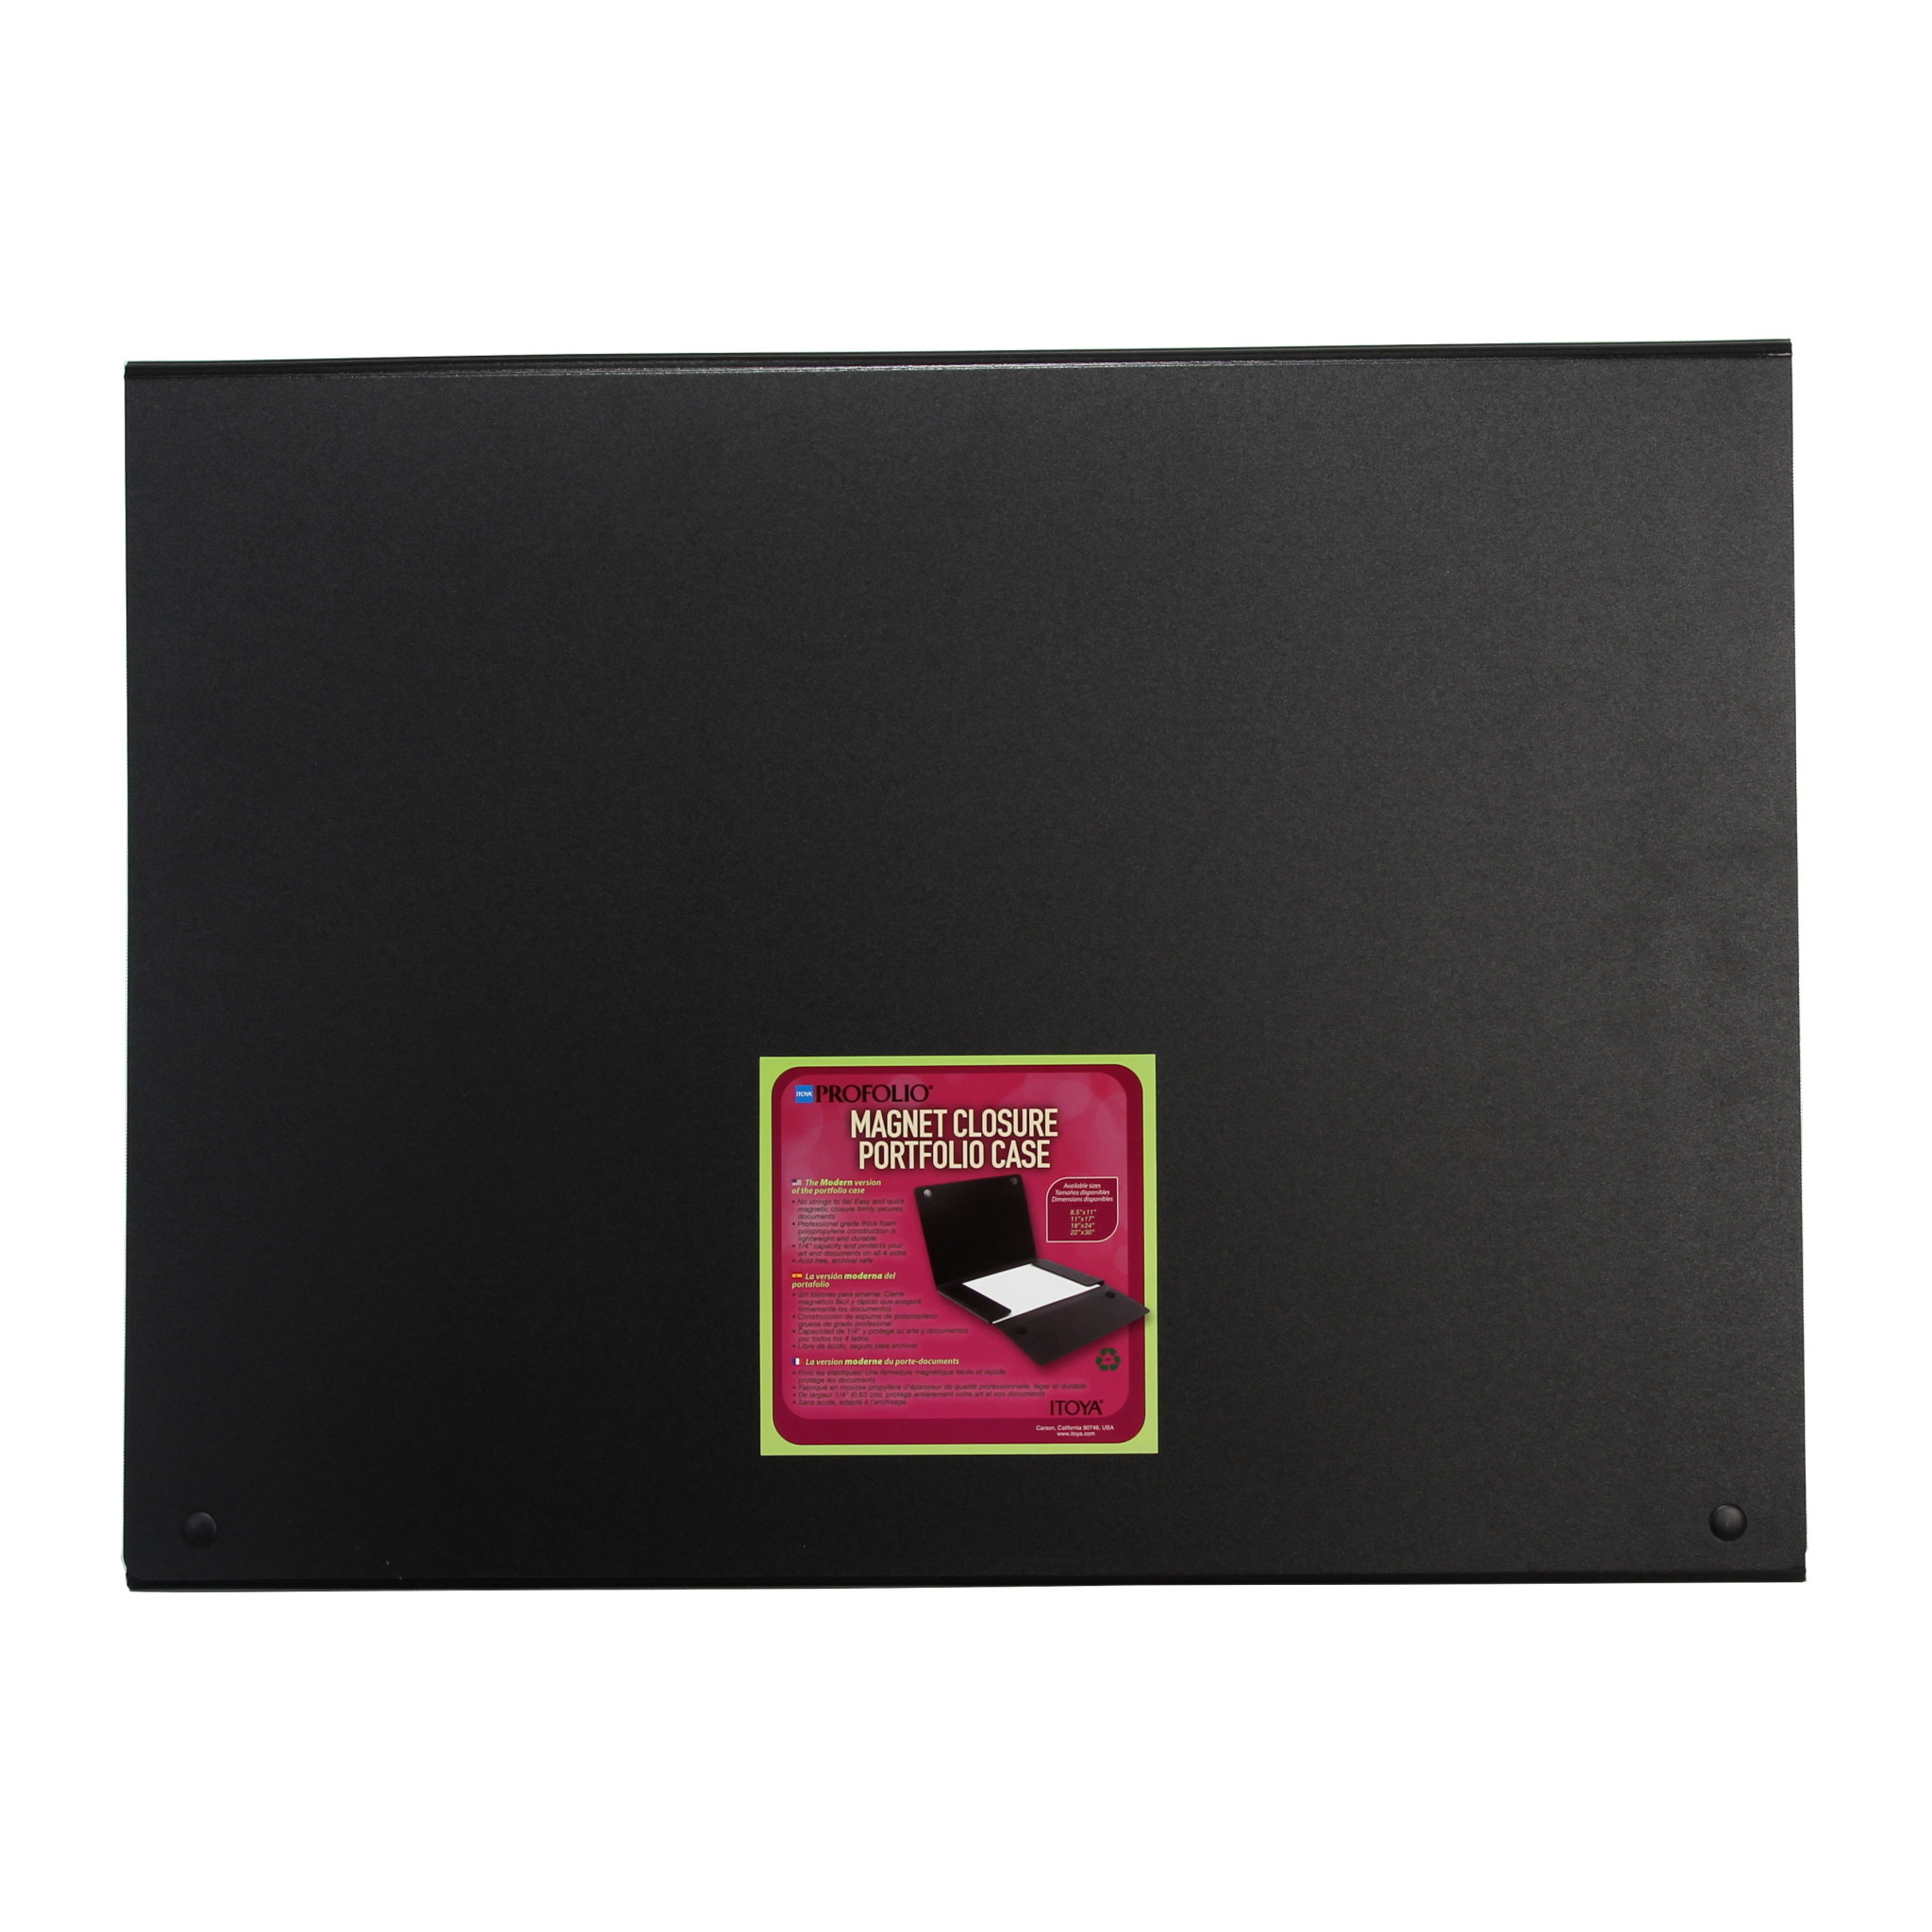 Itoya | Profolio Magnet Closure Portfolio Case (18 x 24 in. Black)